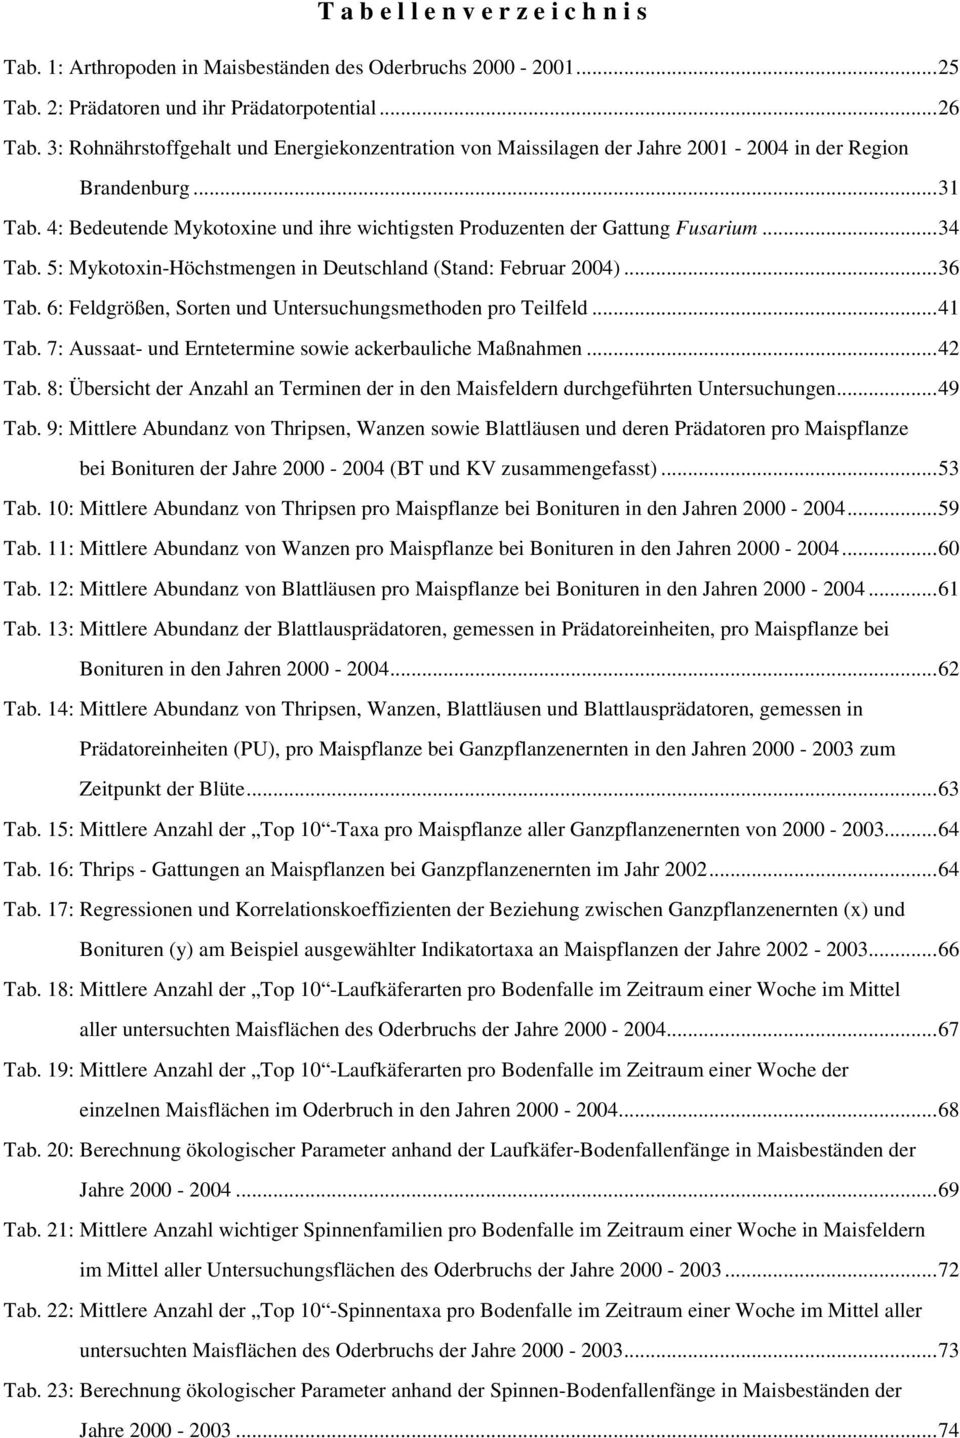 ..34 Tab. 5: Mykotoxin-Höchstmengen in Deutschland (Stand: Februar 2004)...36 Tab. 6: Feldgrößen, Sorten und Untersuchungsmethoden pro Teilfeld...41 Tab.